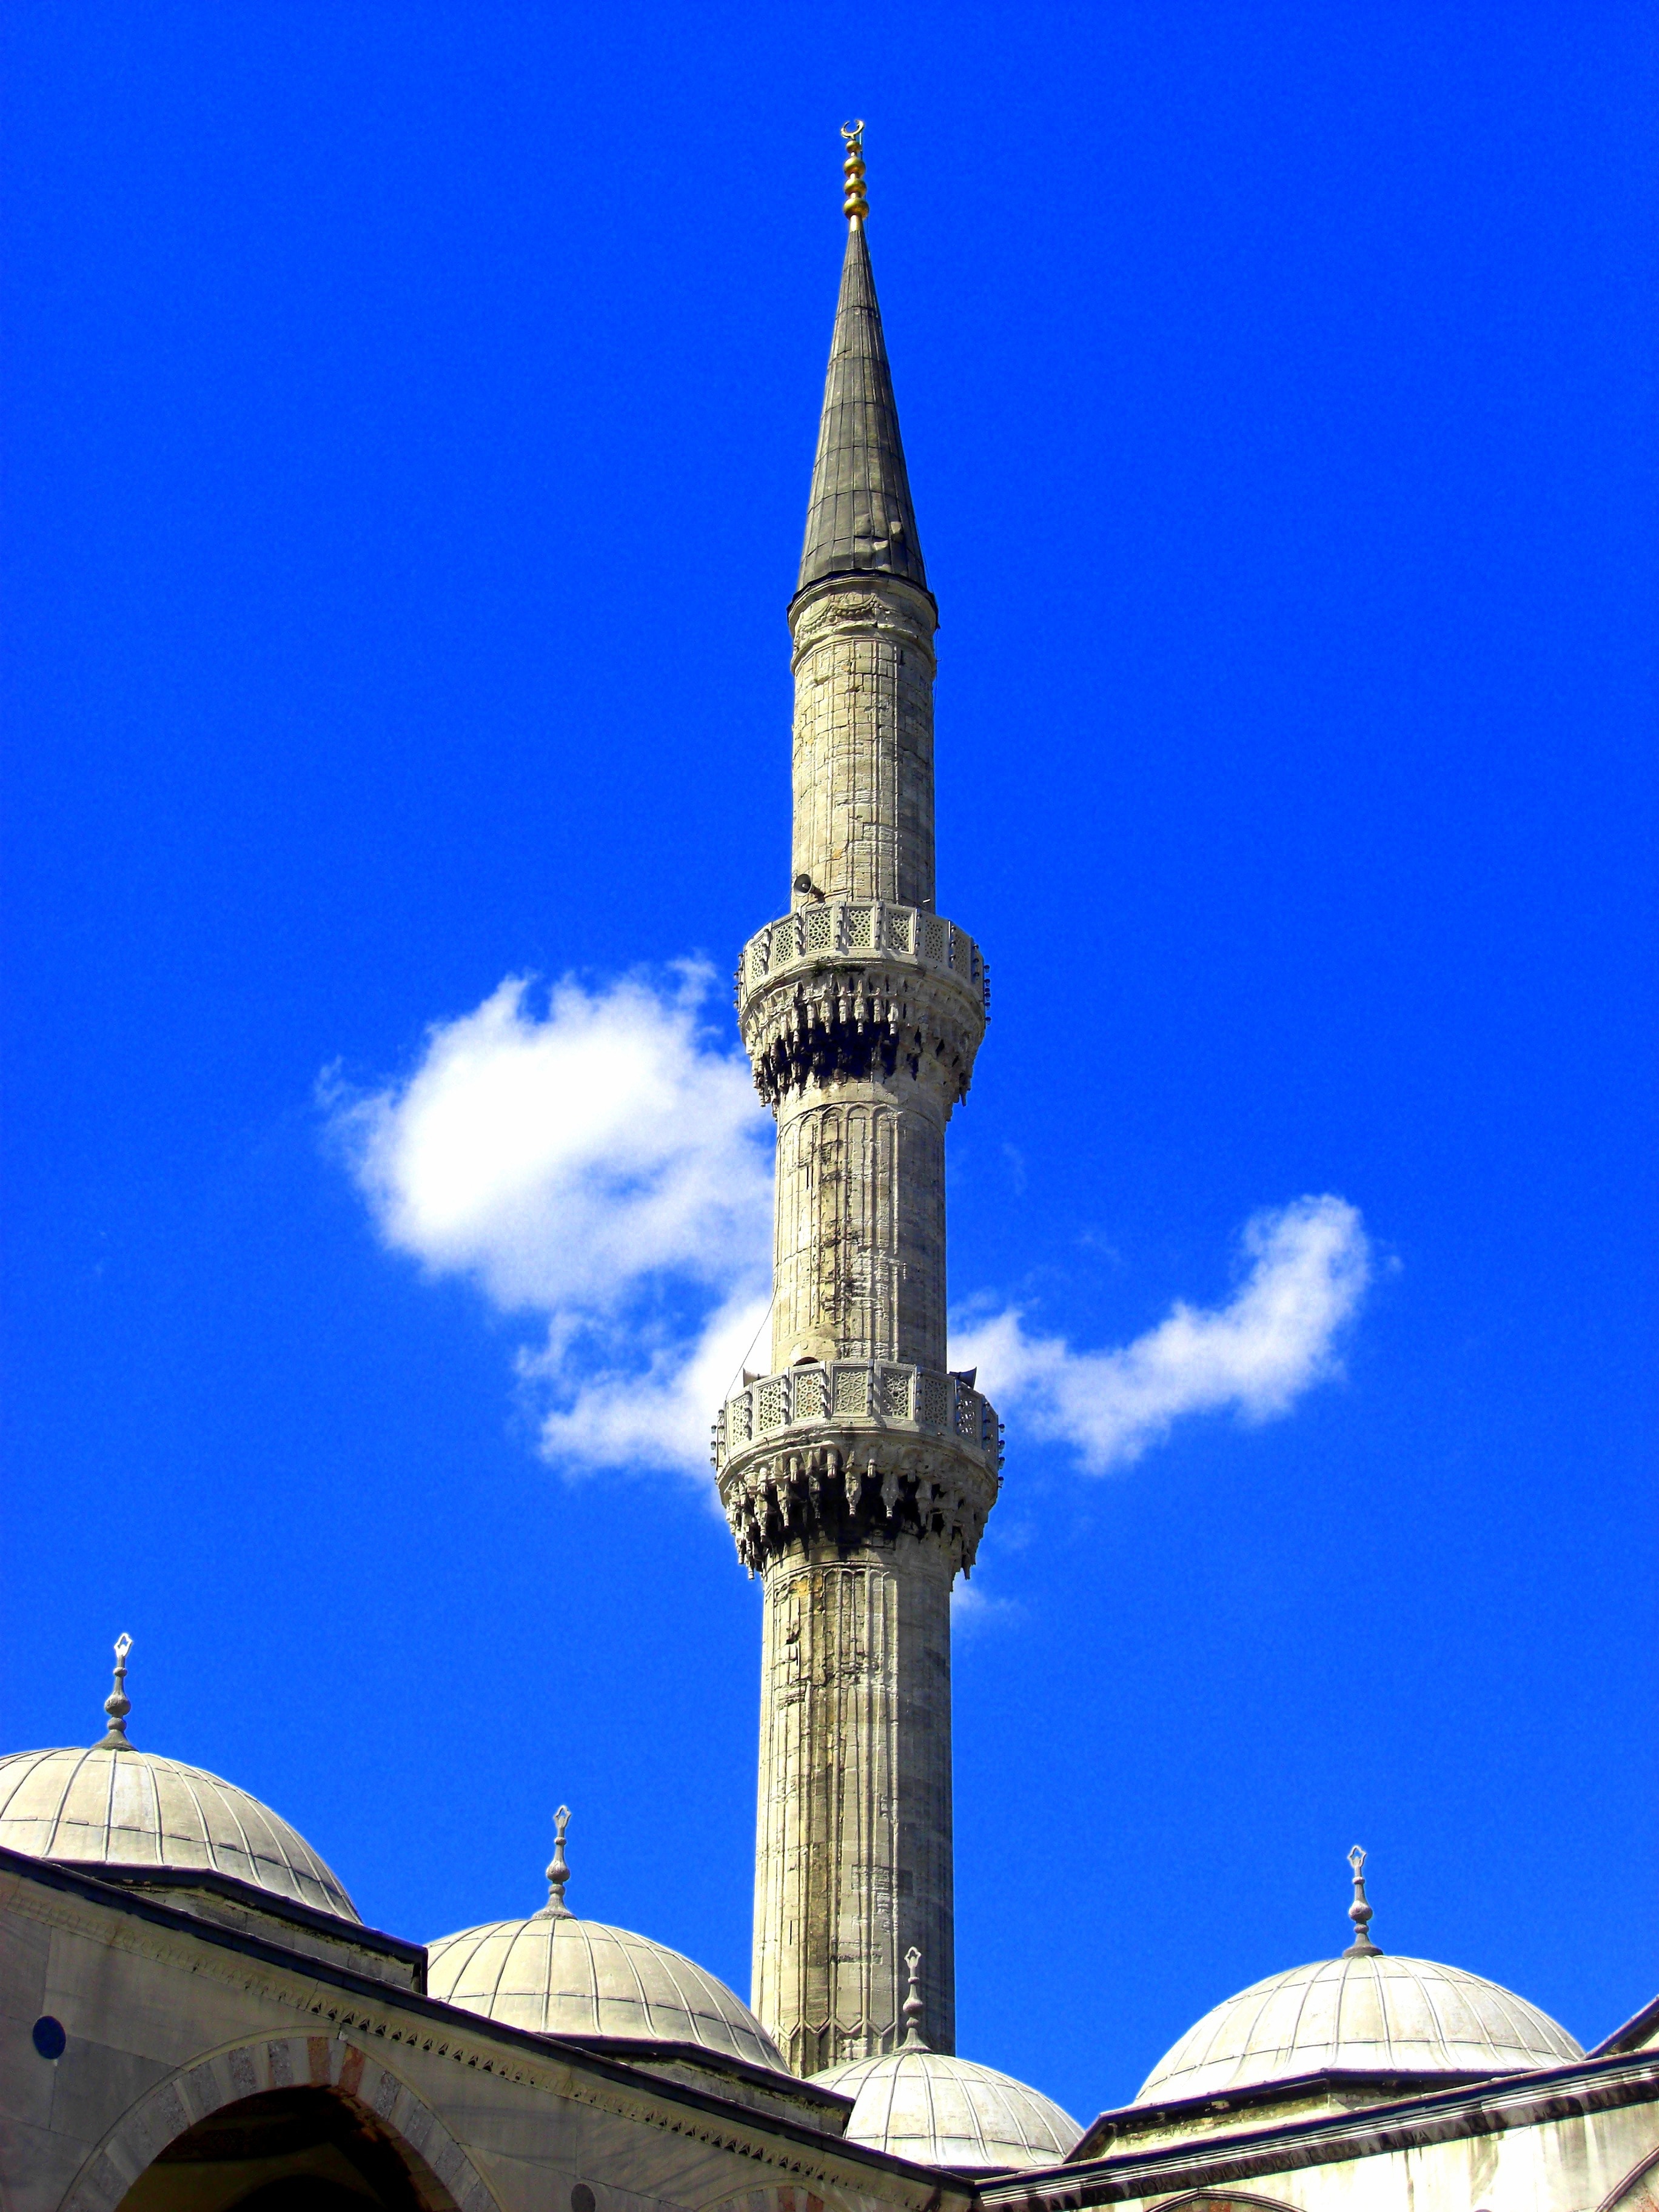 Cloud, Blue, Sky, Mosque, Minaret, architecture, blue